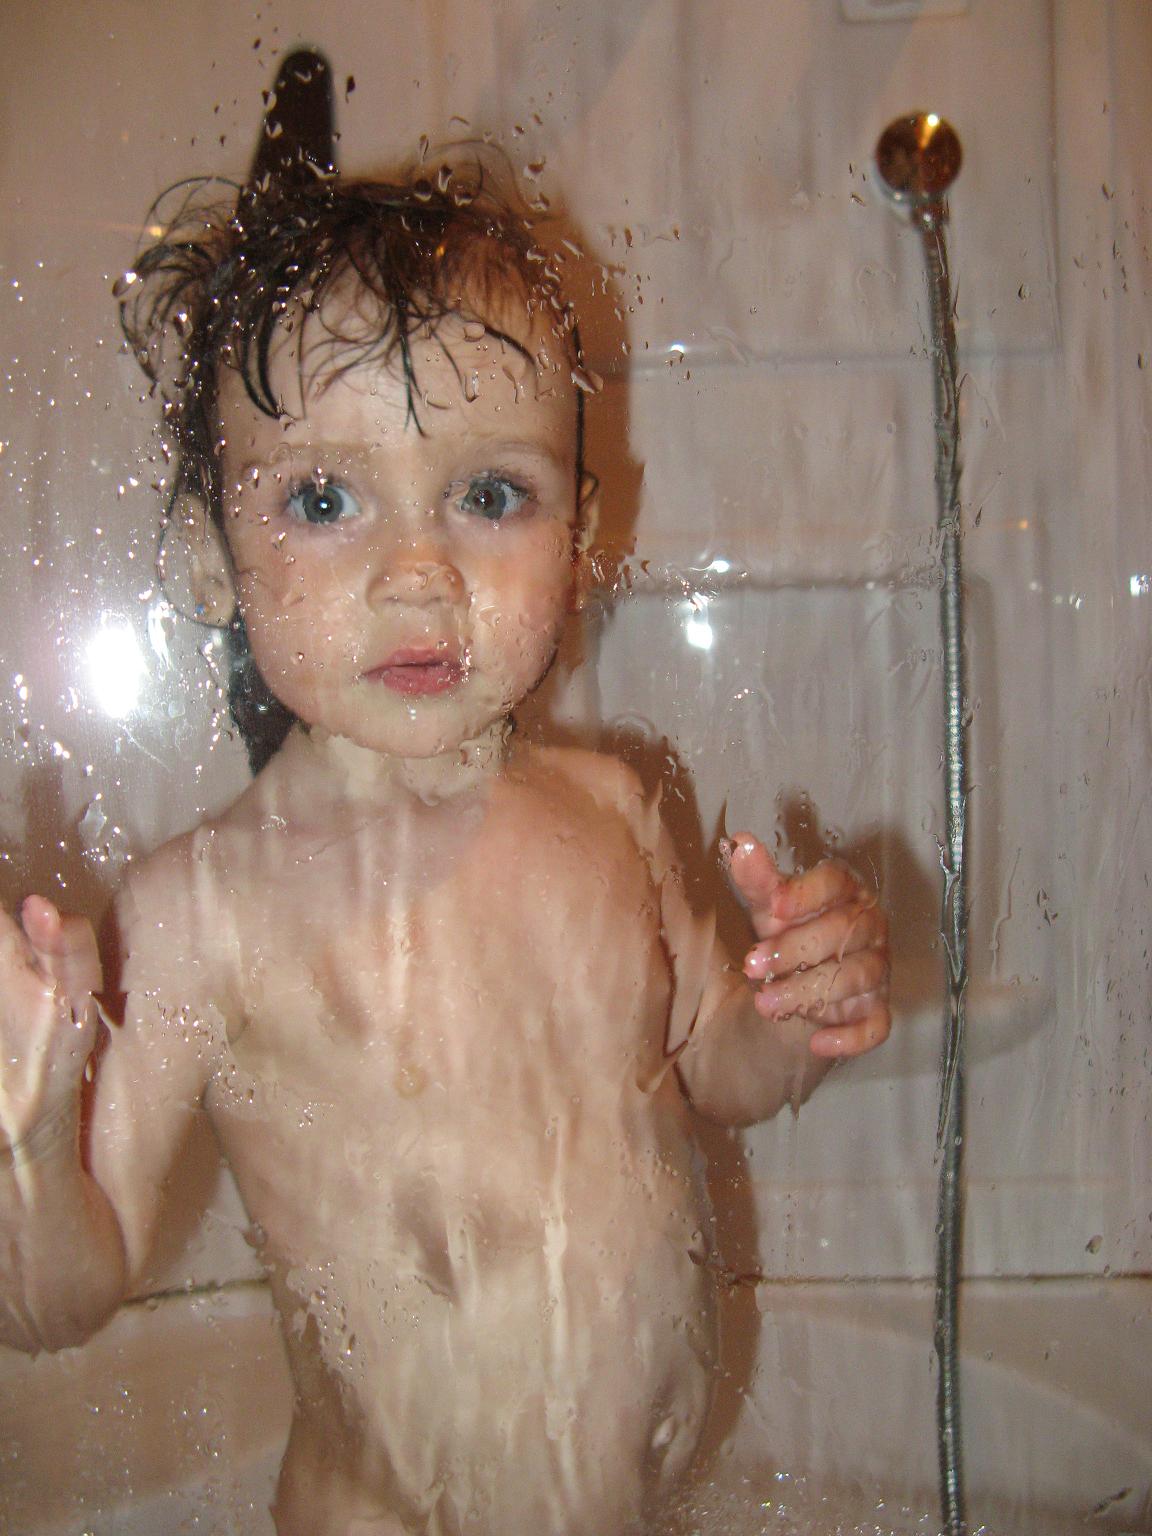 Дочь в душе видео. Маенькиедевочки в душе. Девочка купается в ванне. Девочка купается в душе. Маленькие дети моются.